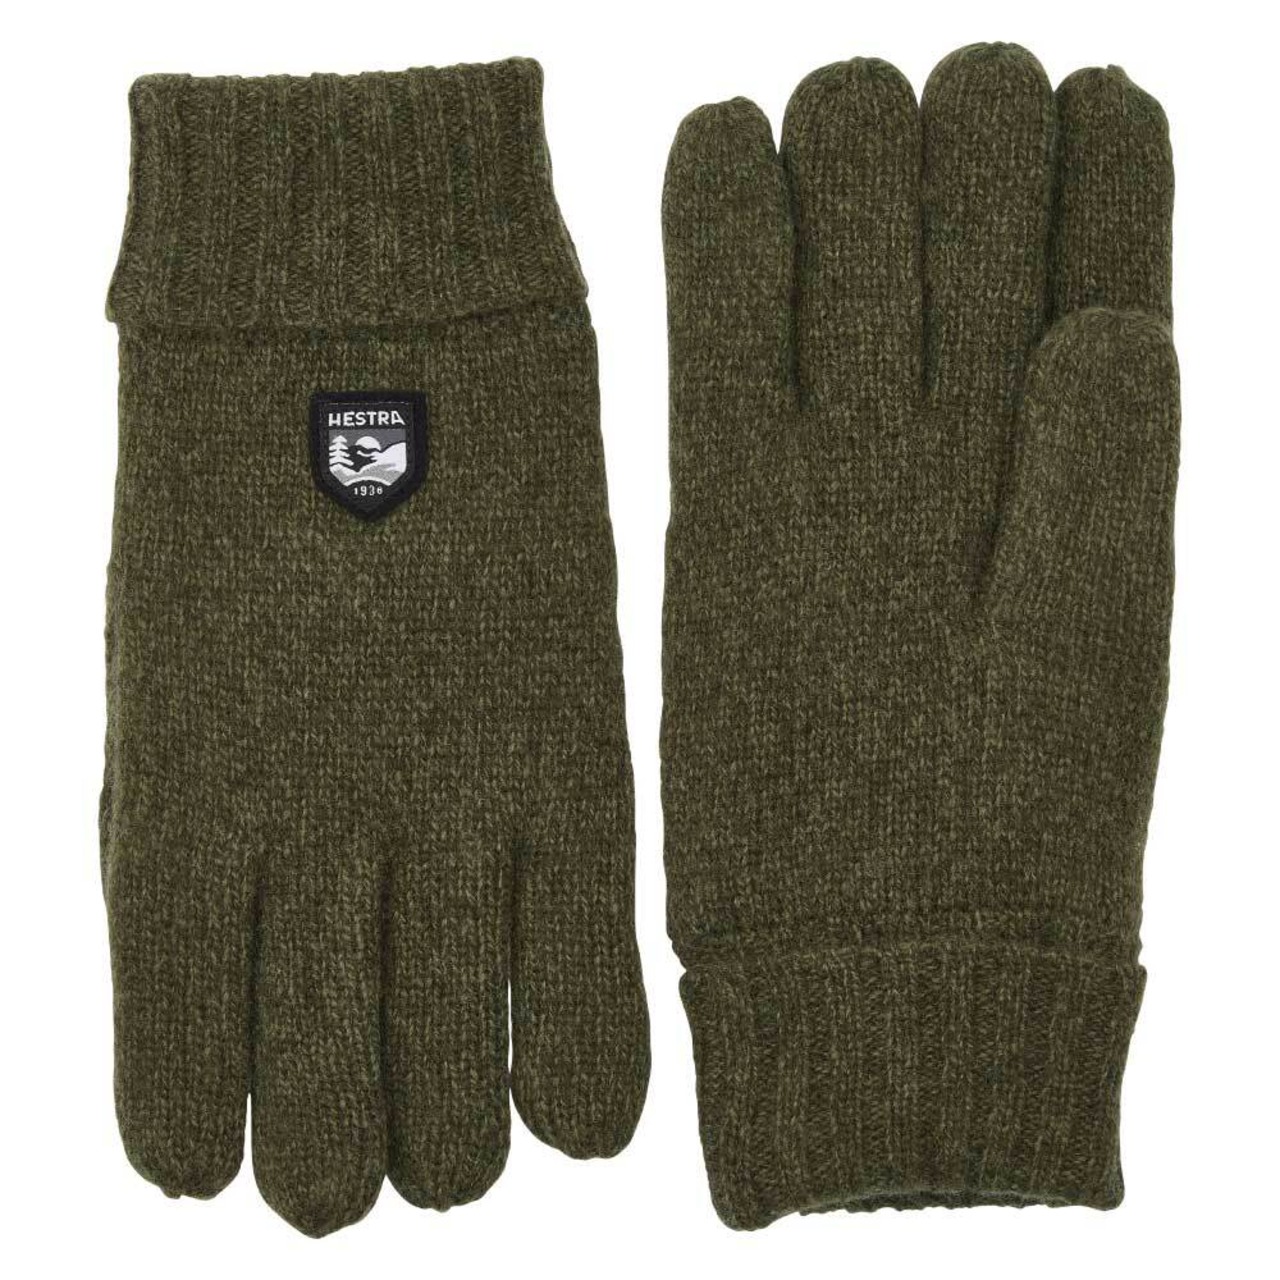 HESTRA / Basic Wool Glove / Olive